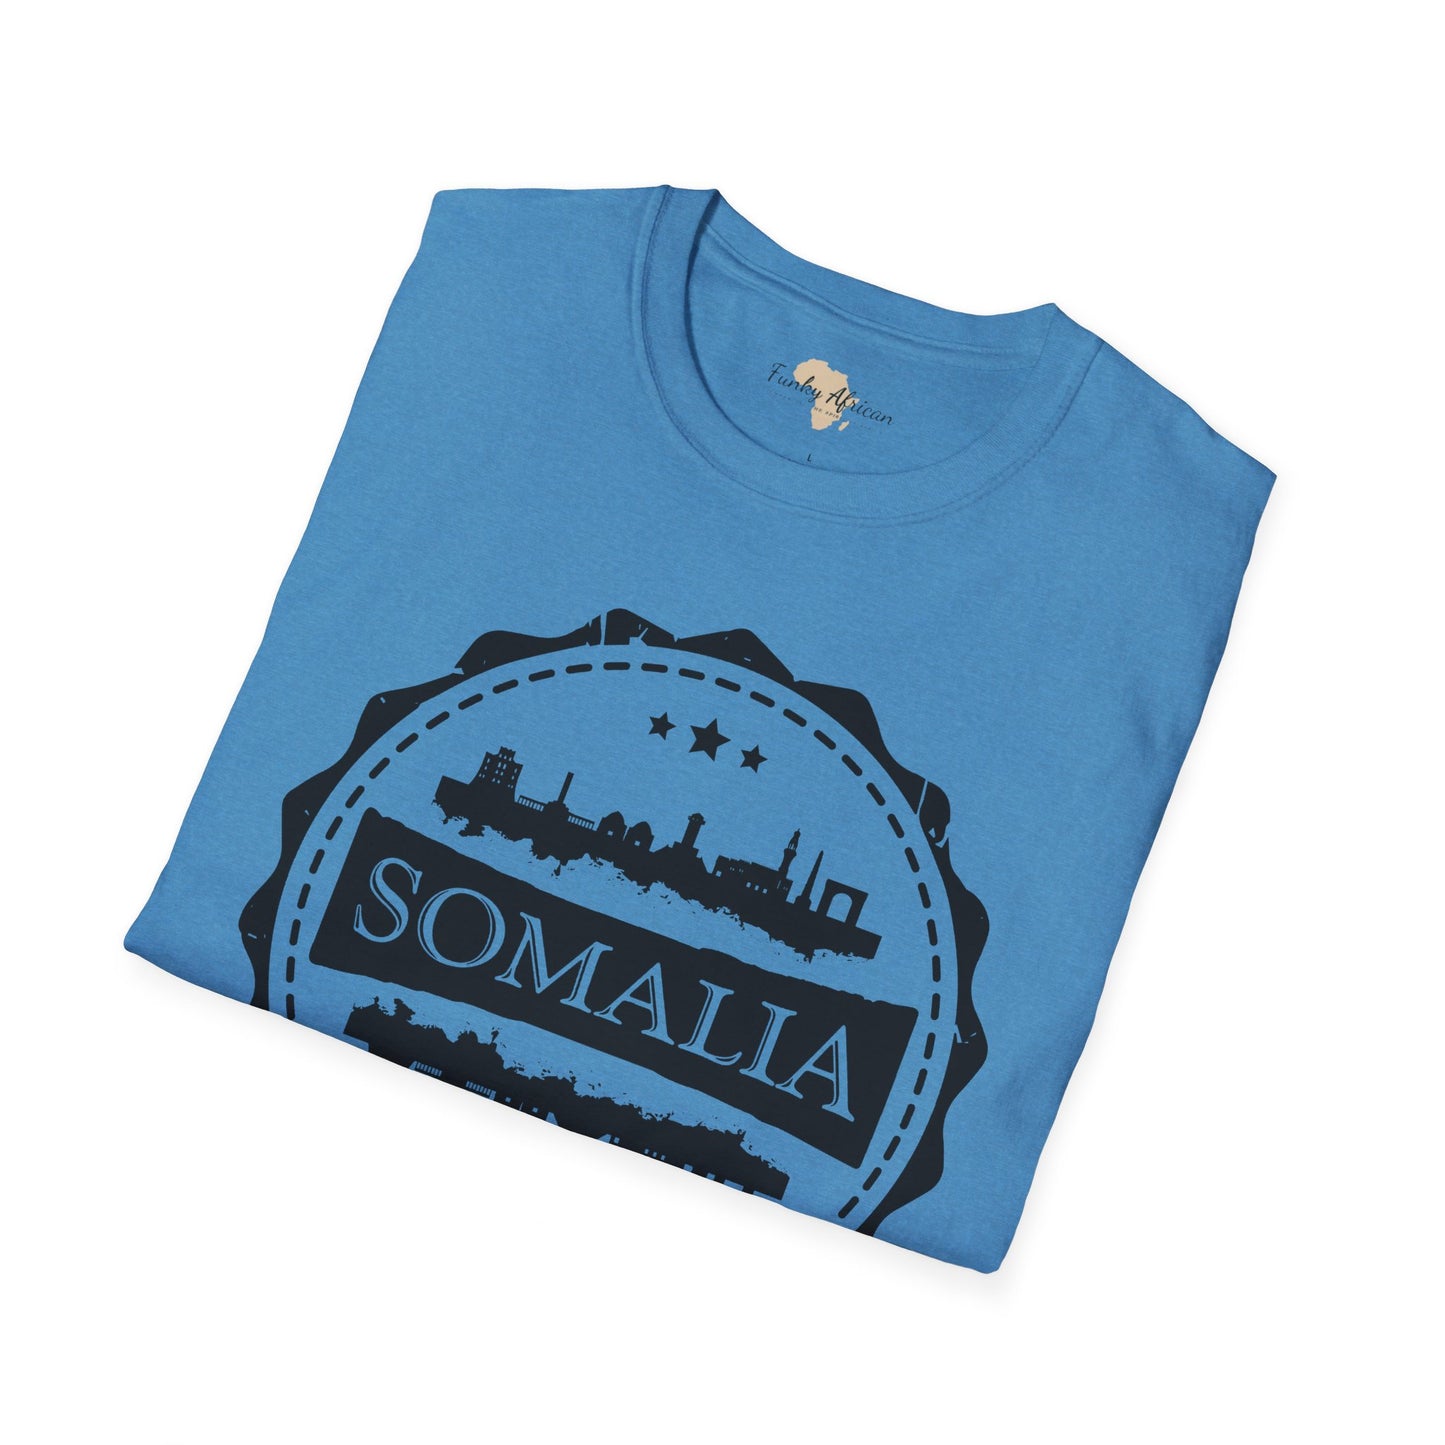 Somalia Stamp unisex tee